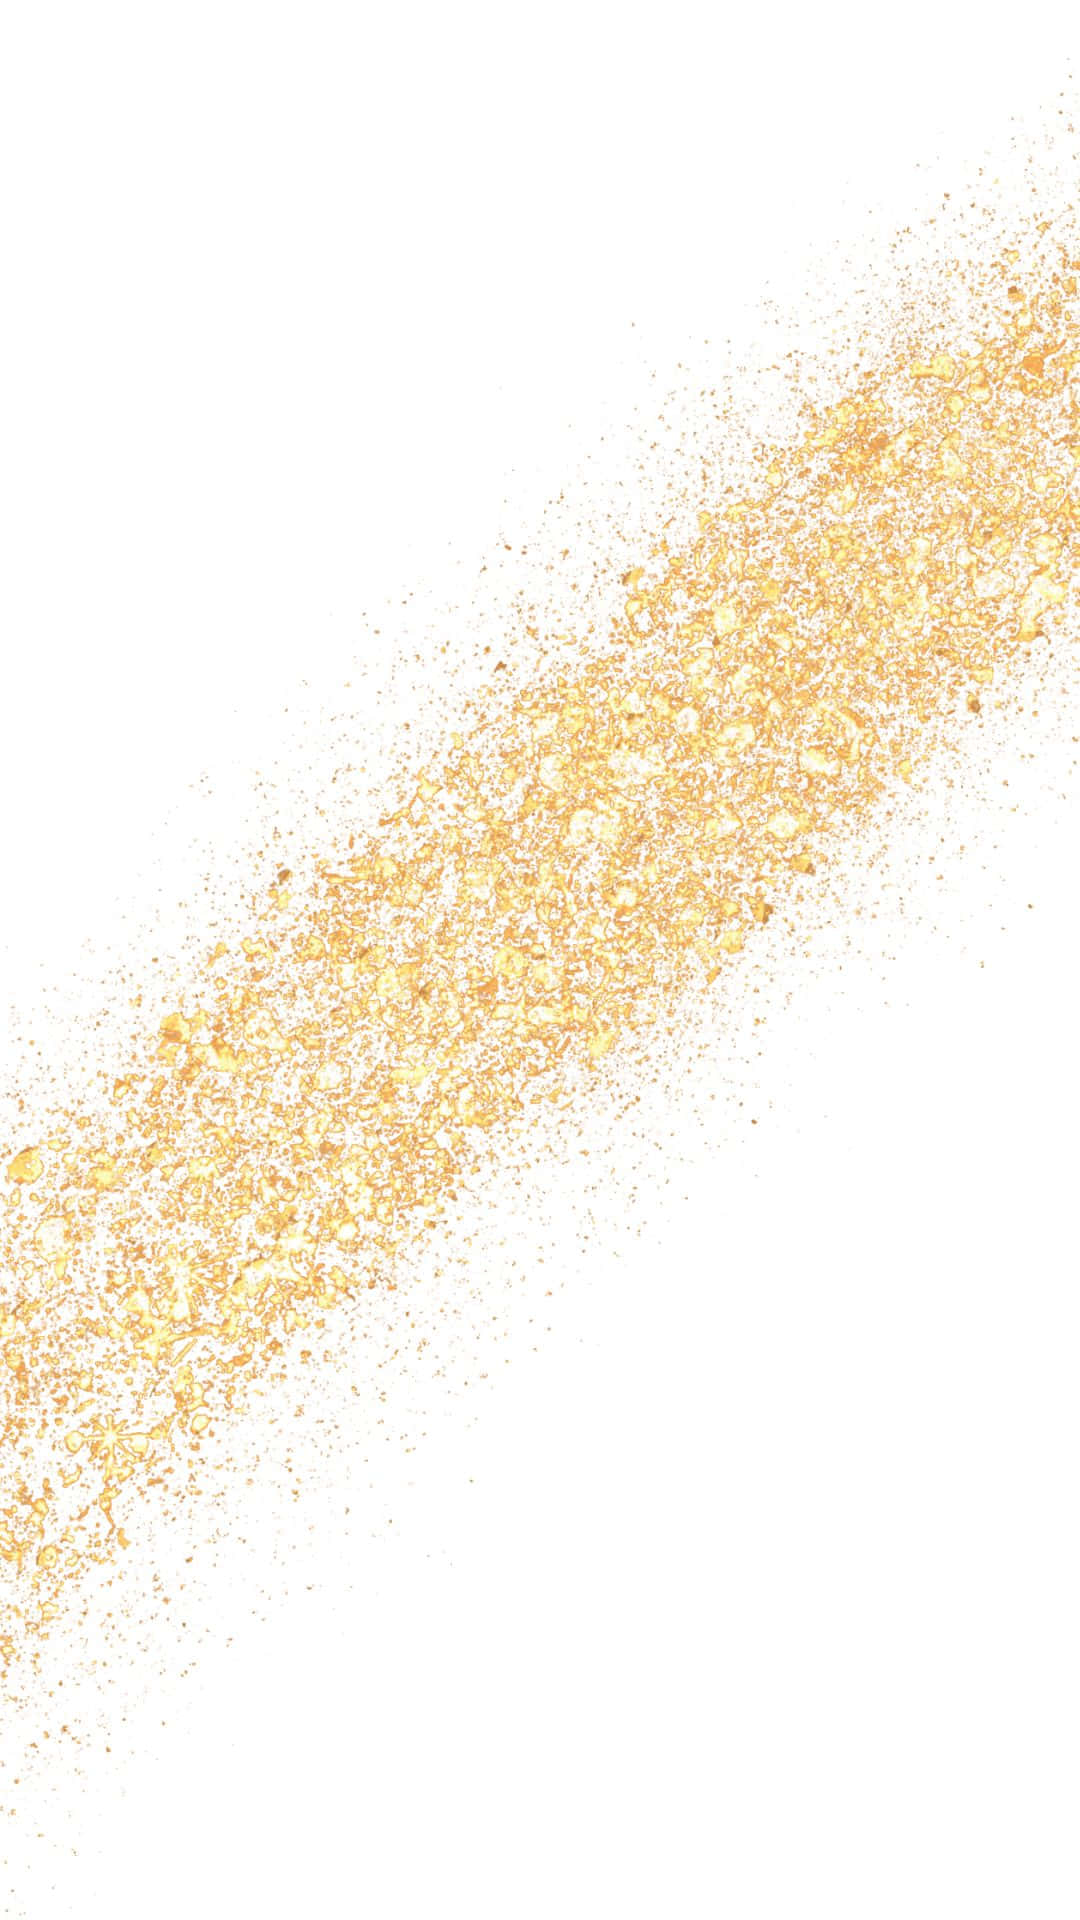 Gold Glitter Splatter On A White Background